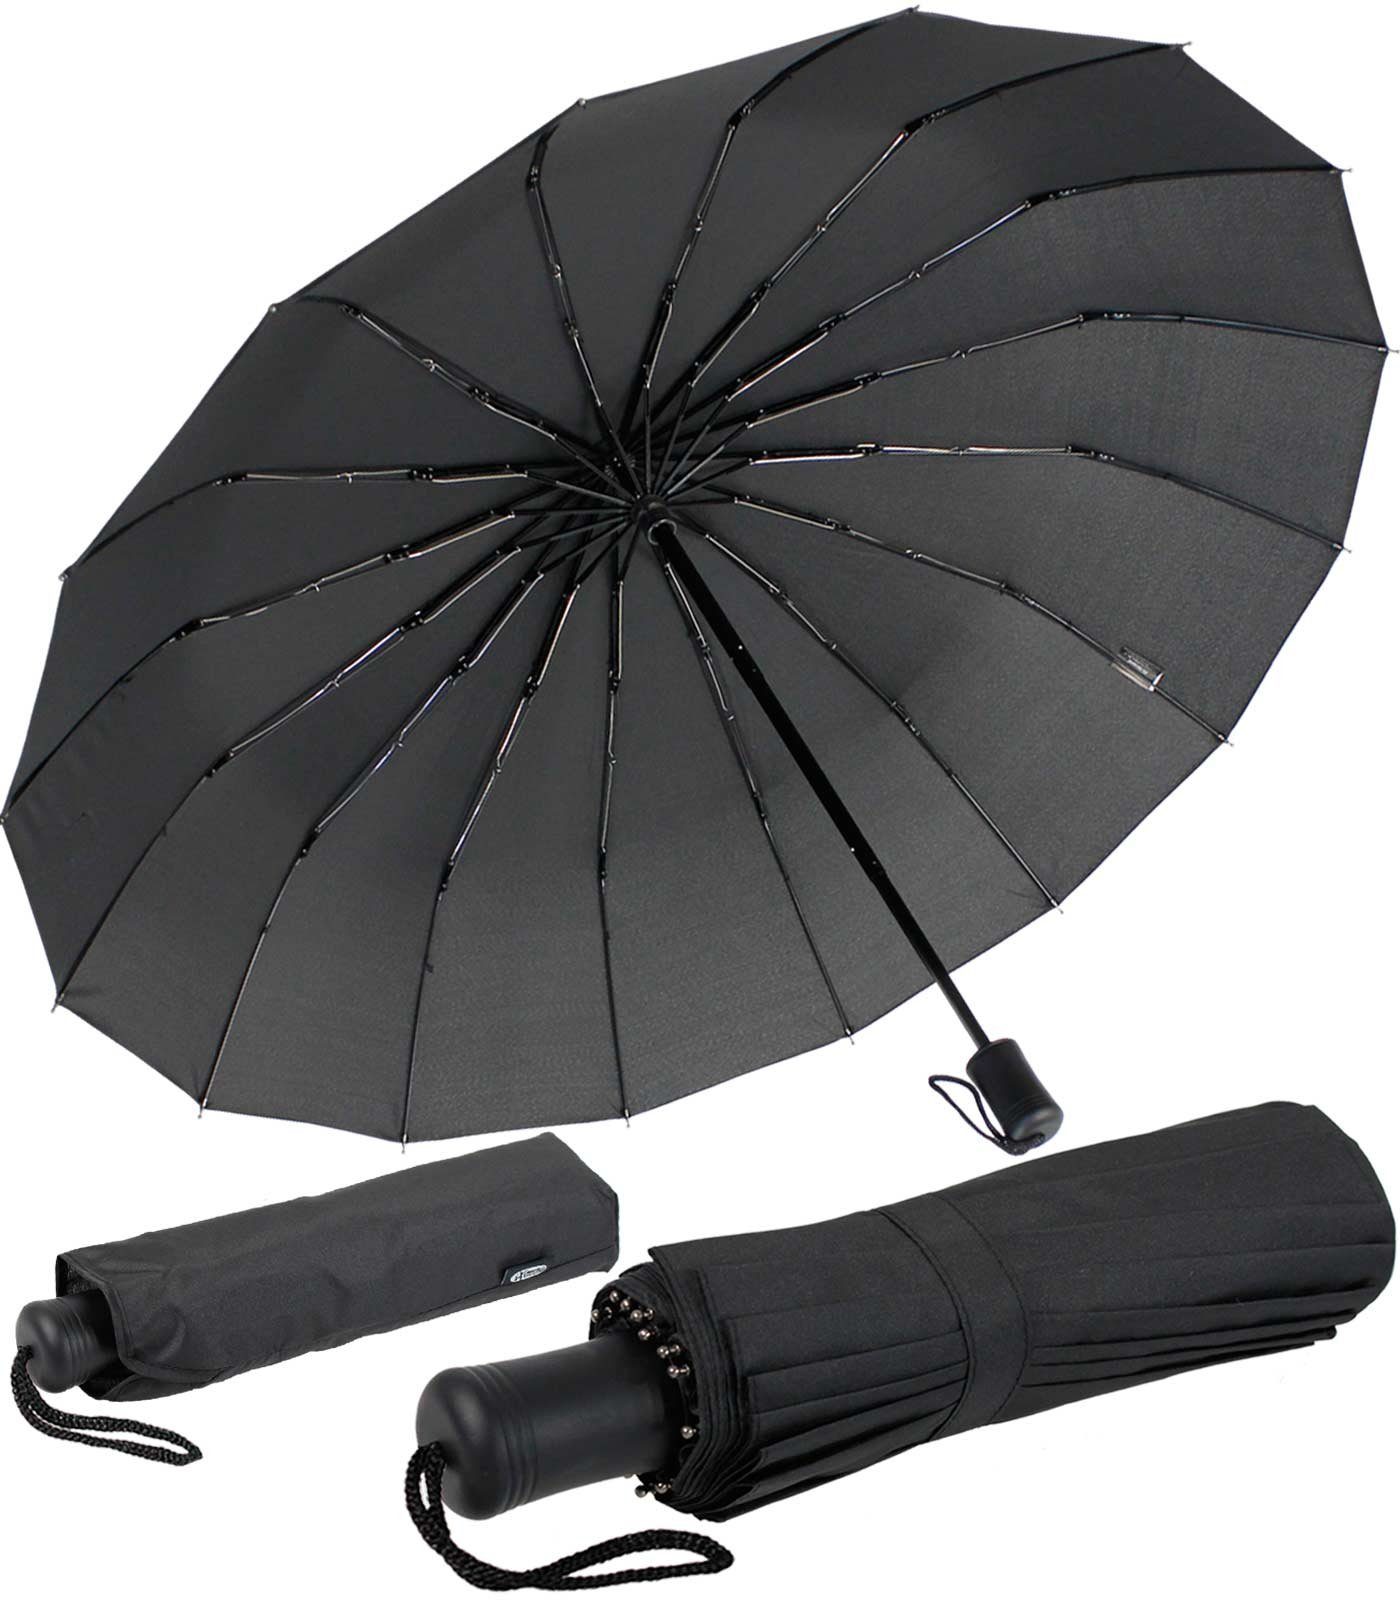 iX-brella Taschenregenschirm Mini mit 16 Streben extra stabil und farbenfroh, farbenfroh schwarz